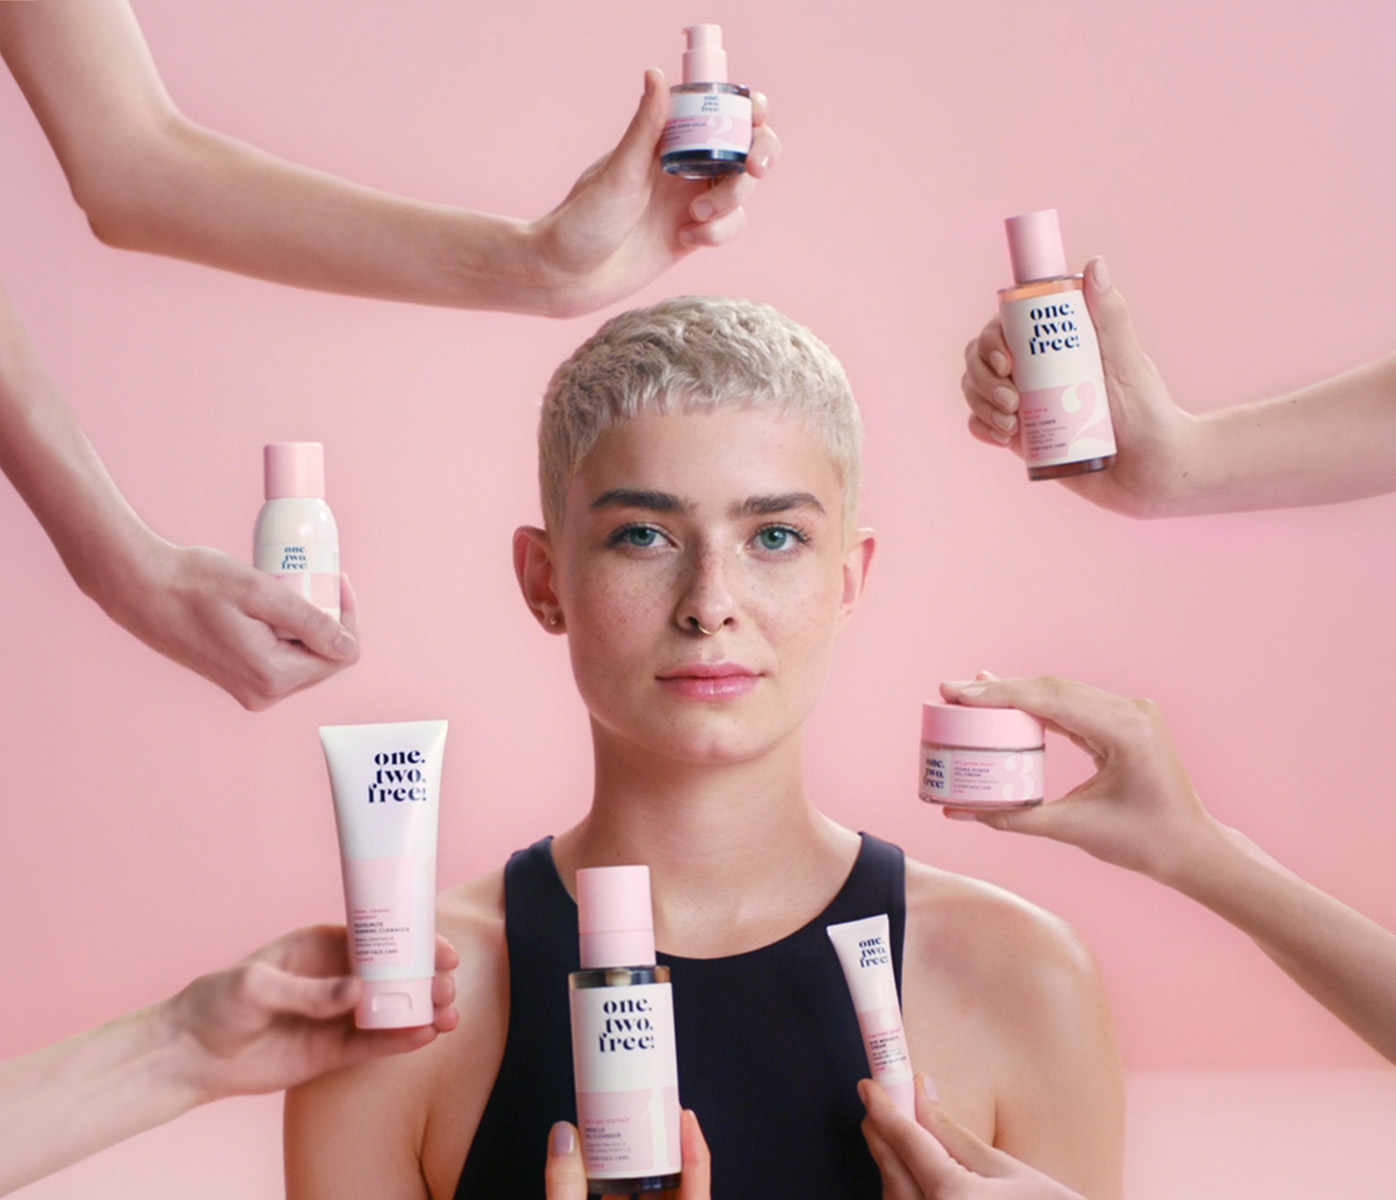 Ein weibliches Model vor einem einfarbigen Hintergrund. Aus allen Richtungen ragen Arme und Hände mit Produkten in das Bild.